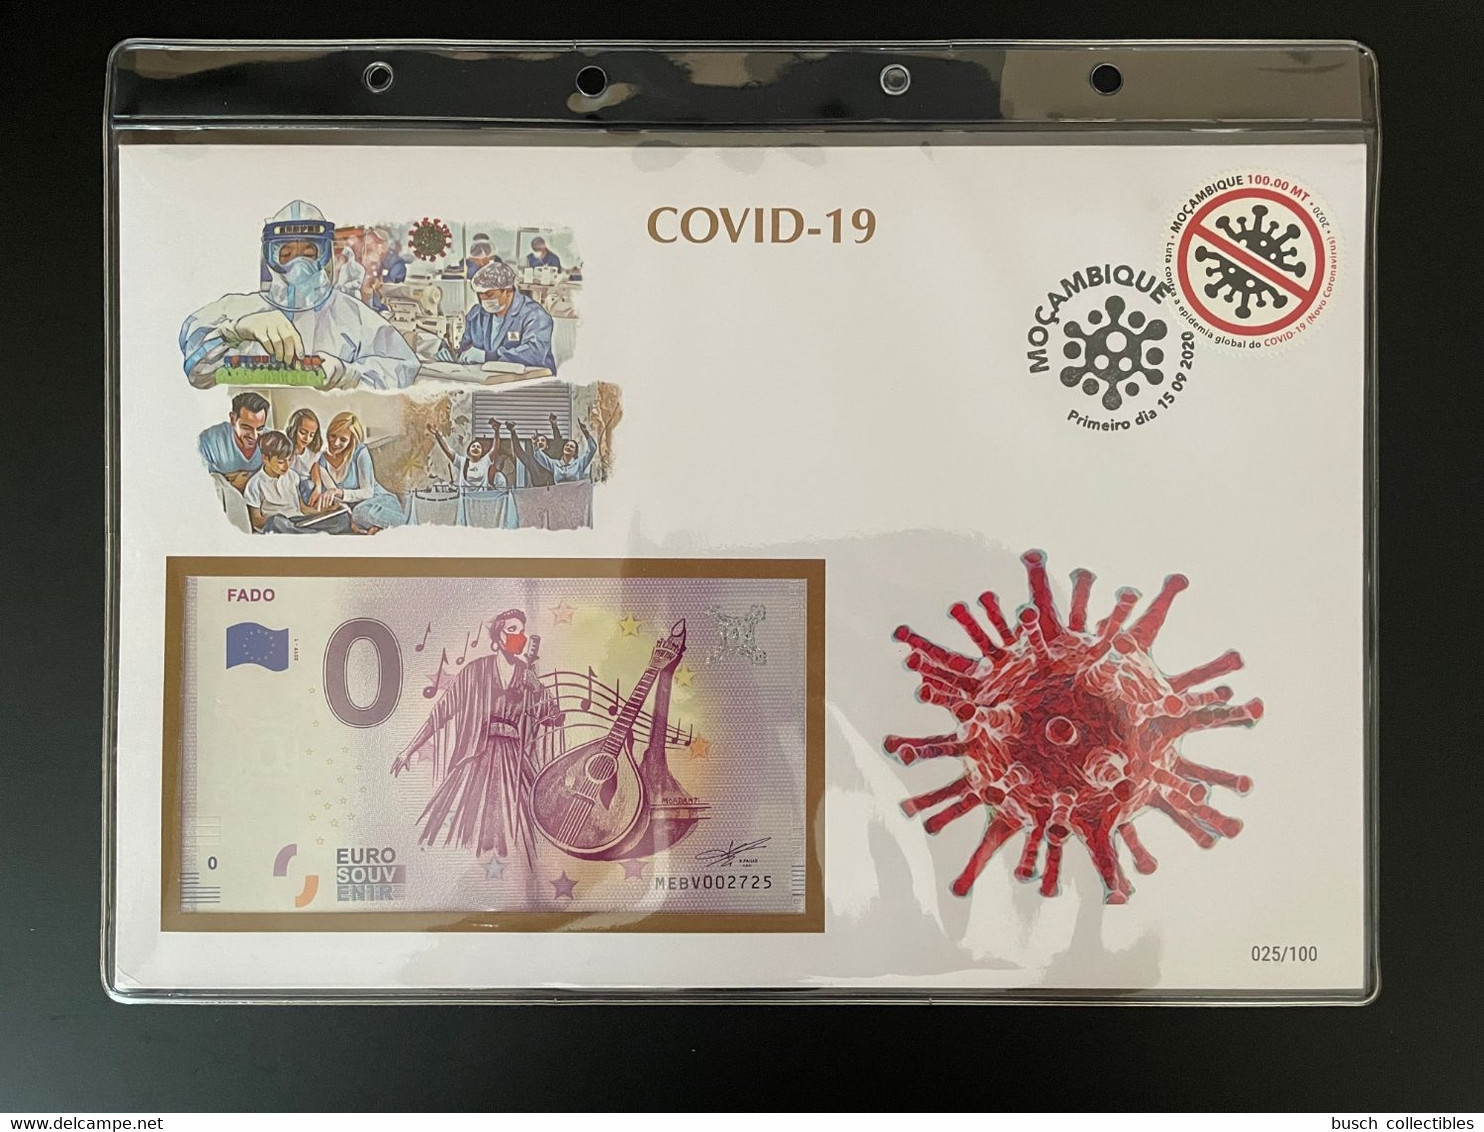 Euro Souvenir Banknote Cover COVID-19 Pandémie Pandemic Fado Mozambique Banknotenbrief - Disease